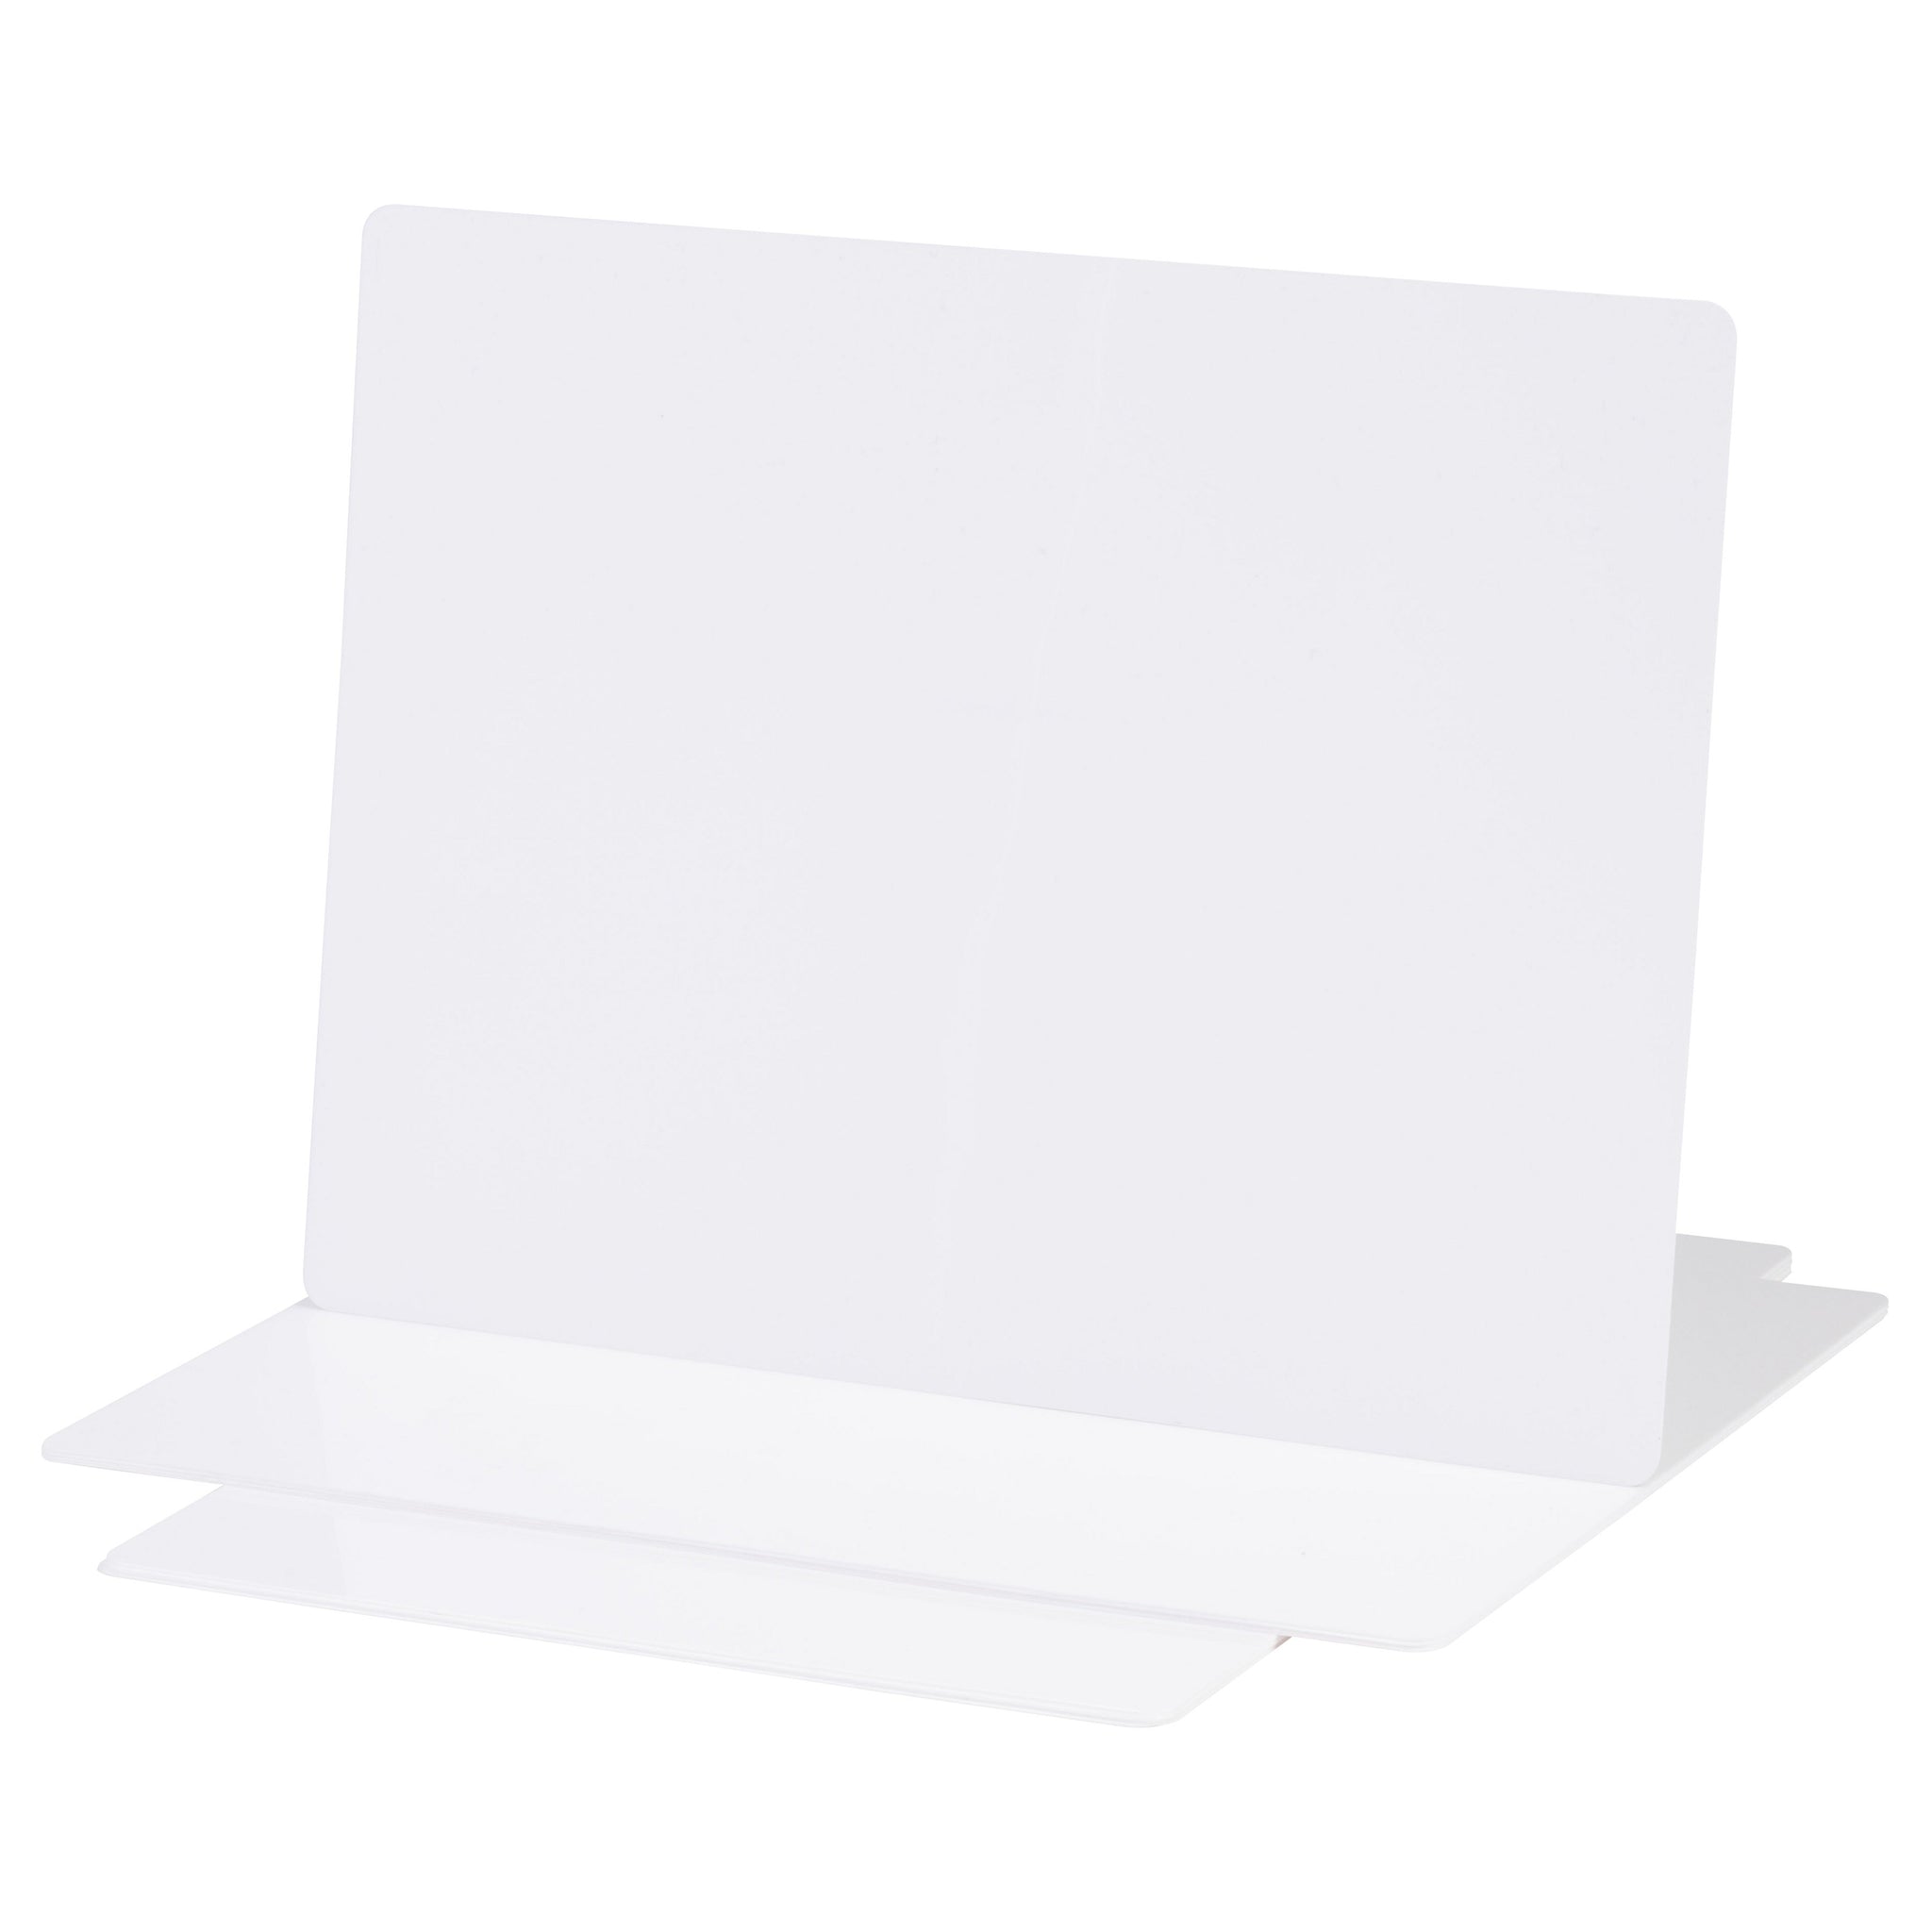 A4 Flexible Plain Whiteboard PK10